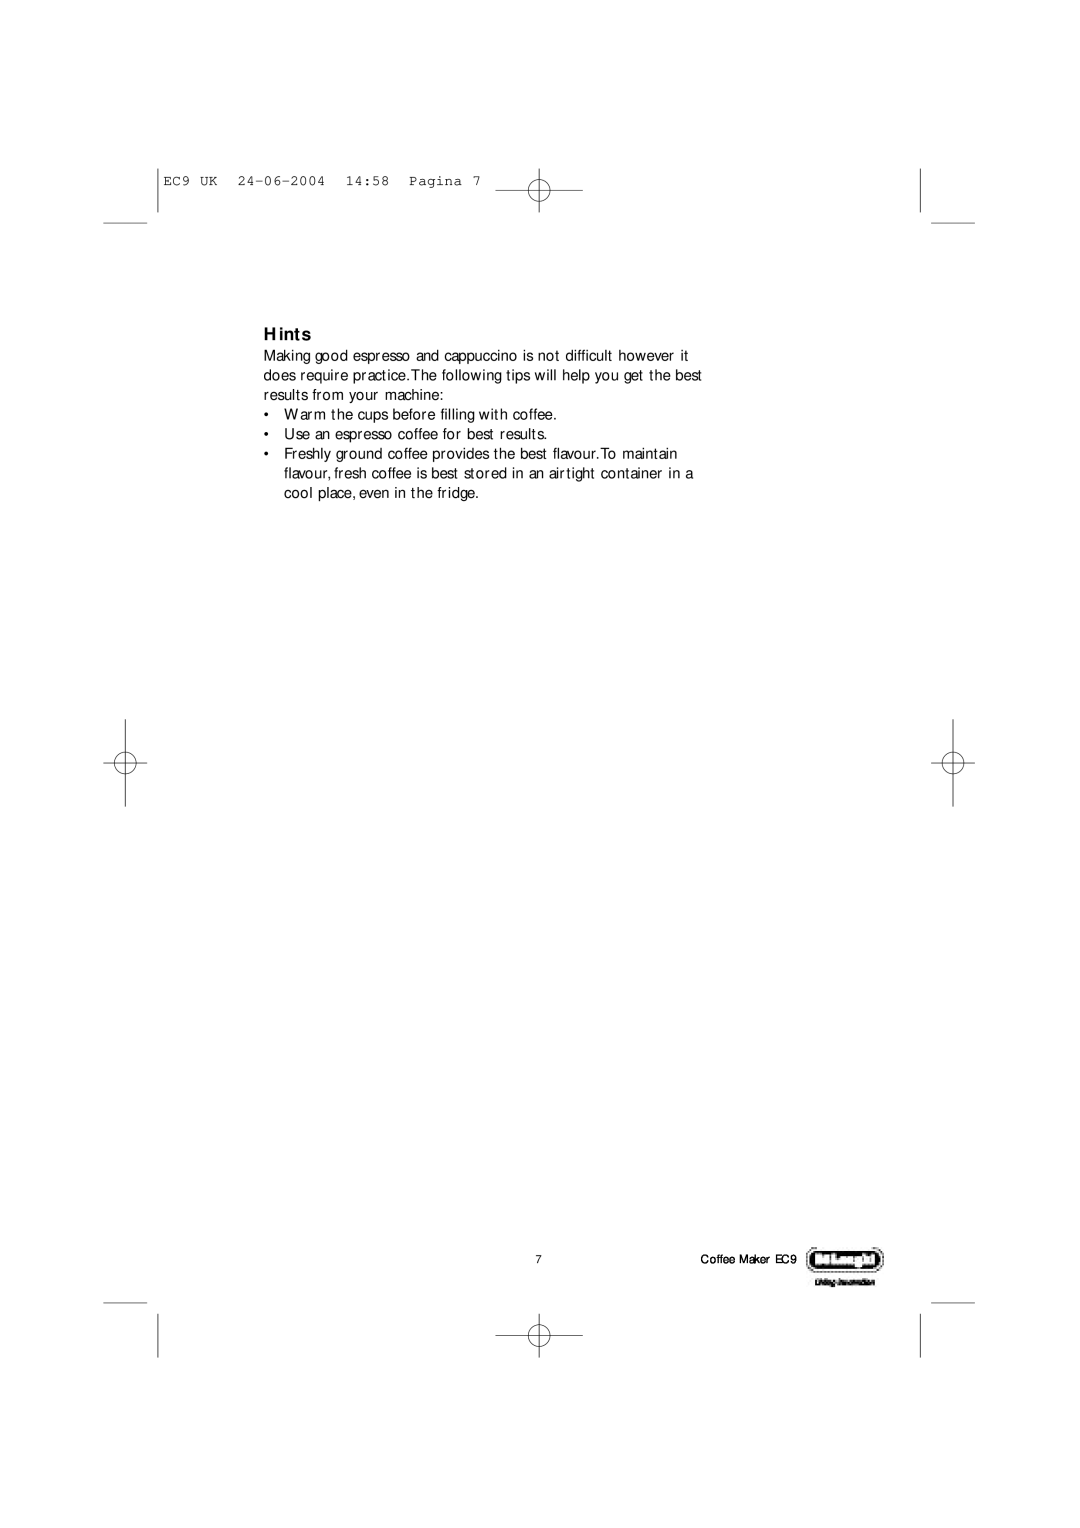 DeLonghi EC9 UK manual Hints 